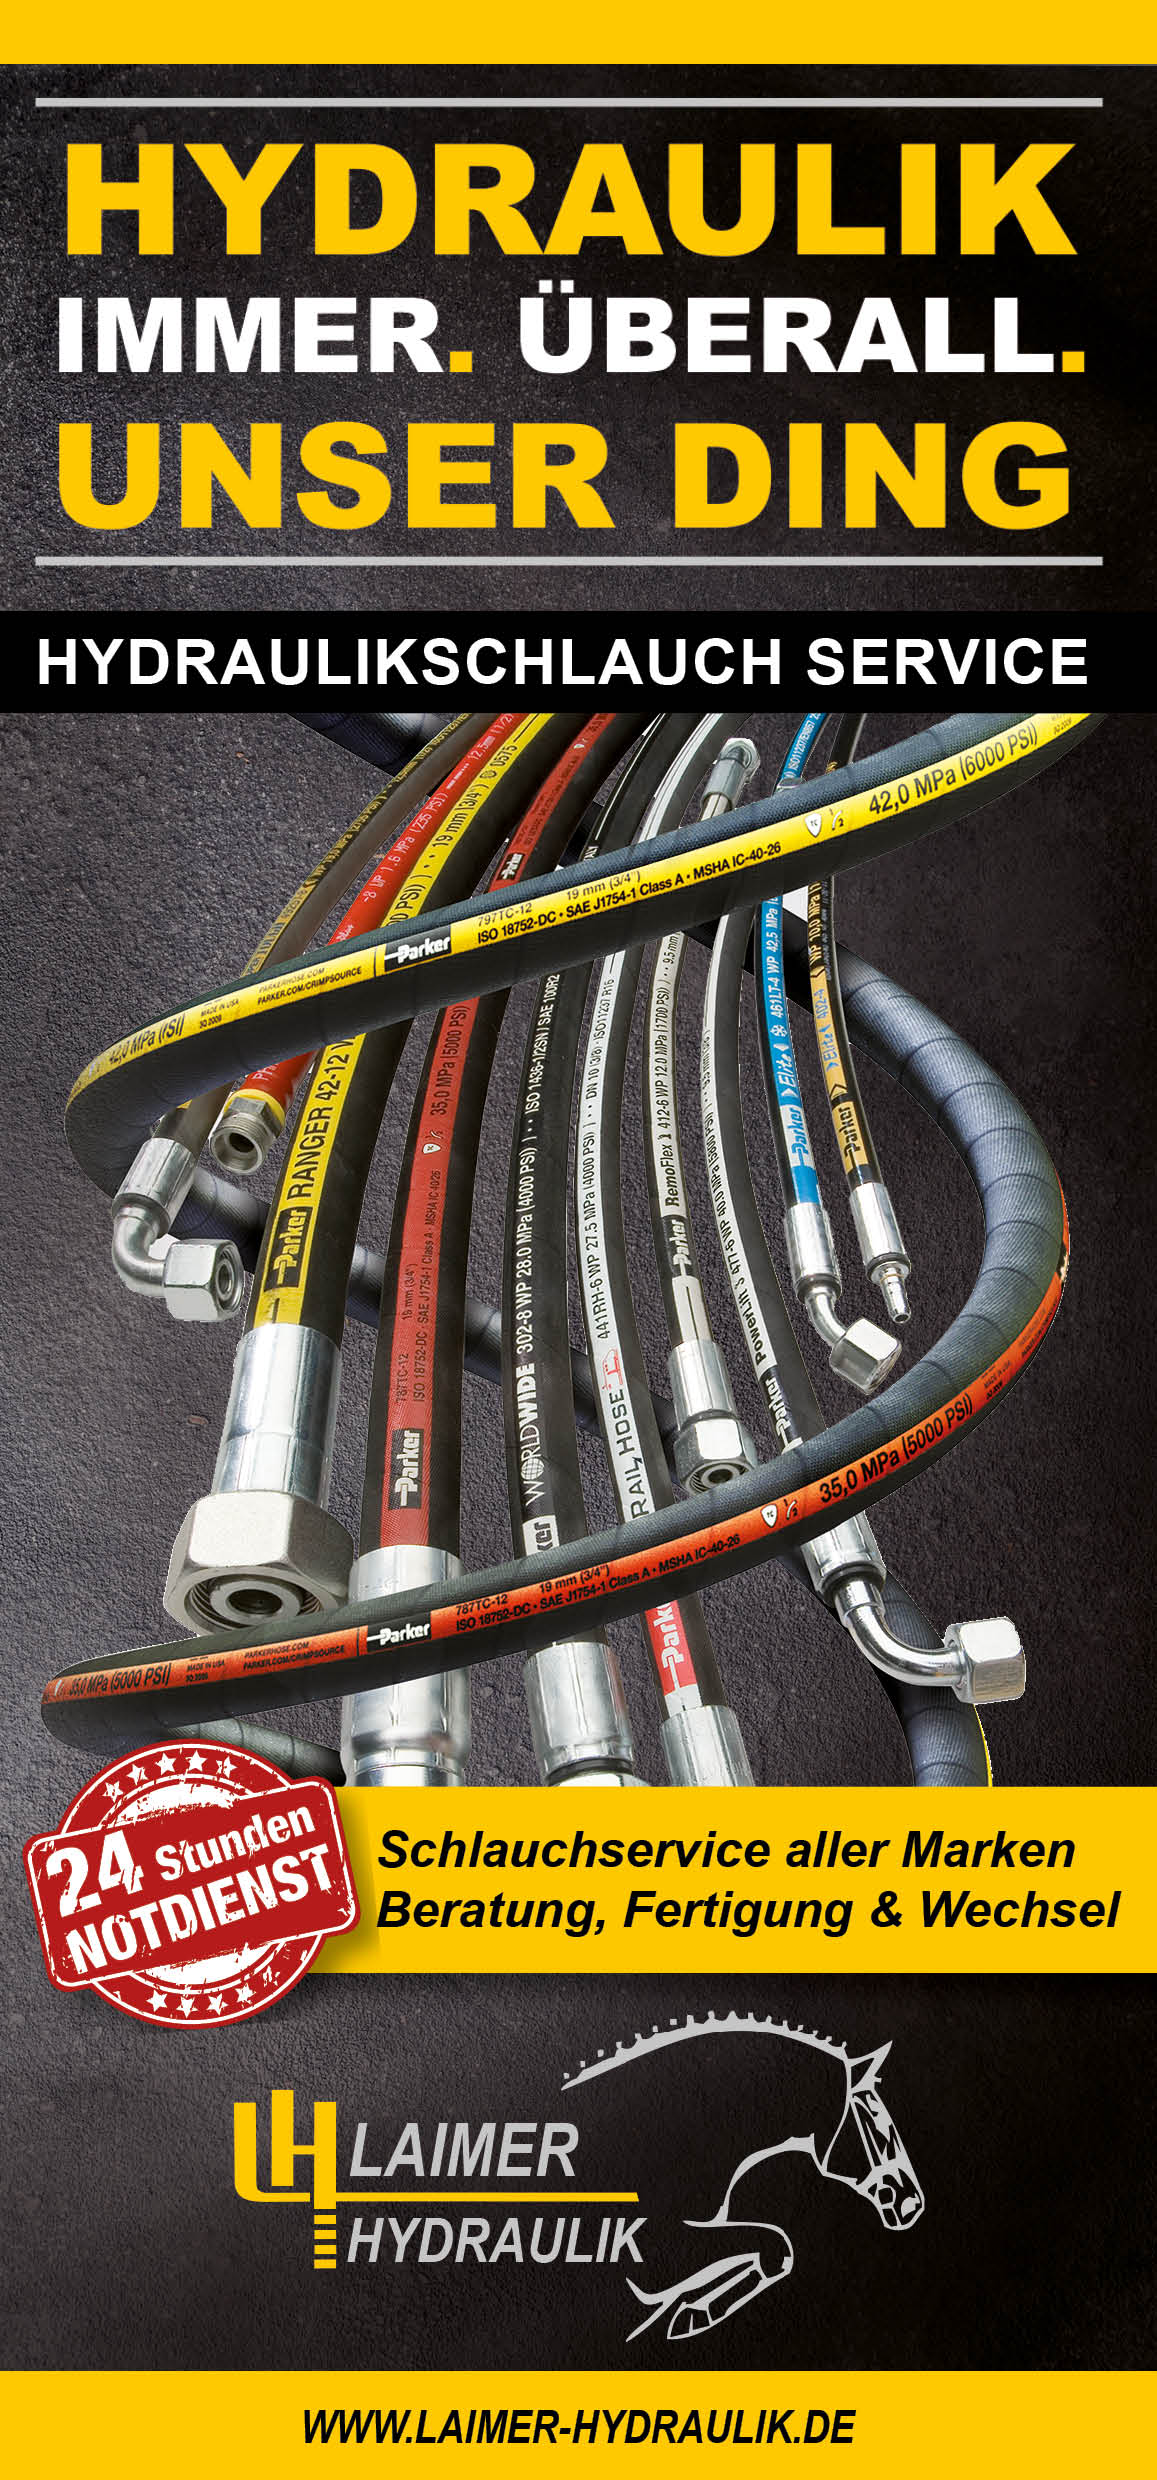 Hydraulik Schlauchservice der Laimer Hydraulik GmbH